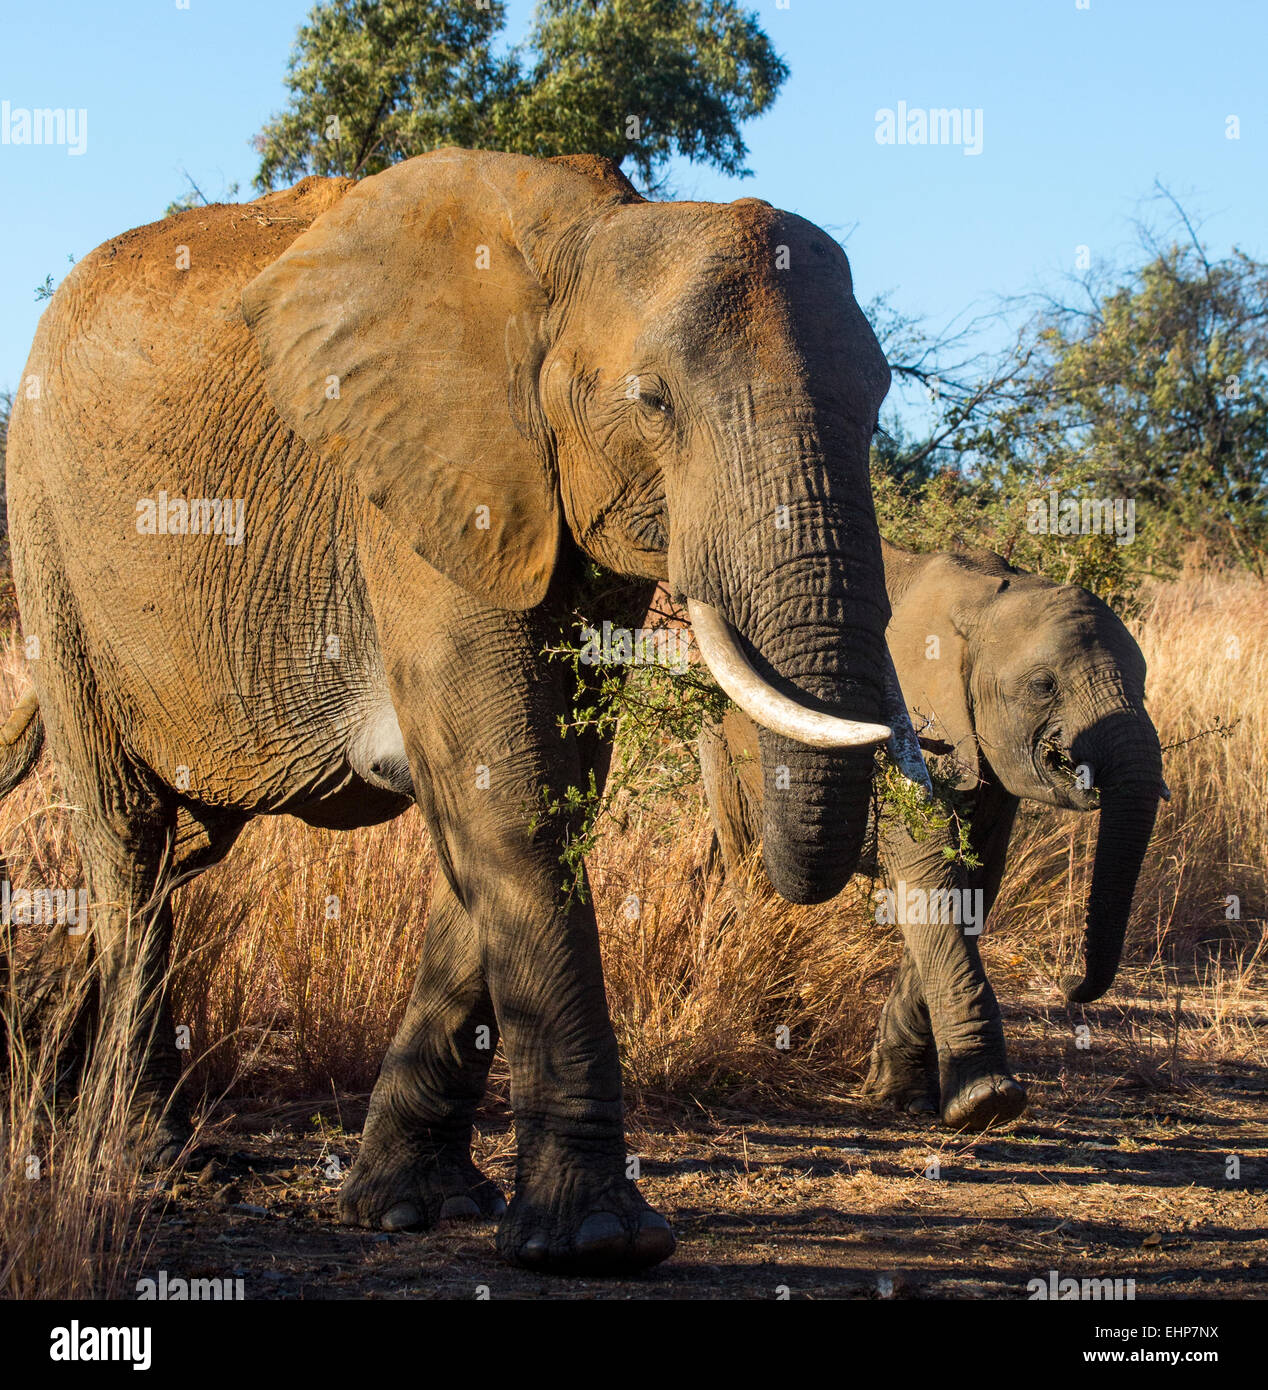 Los elefantes africanos en Bush Foto de stock